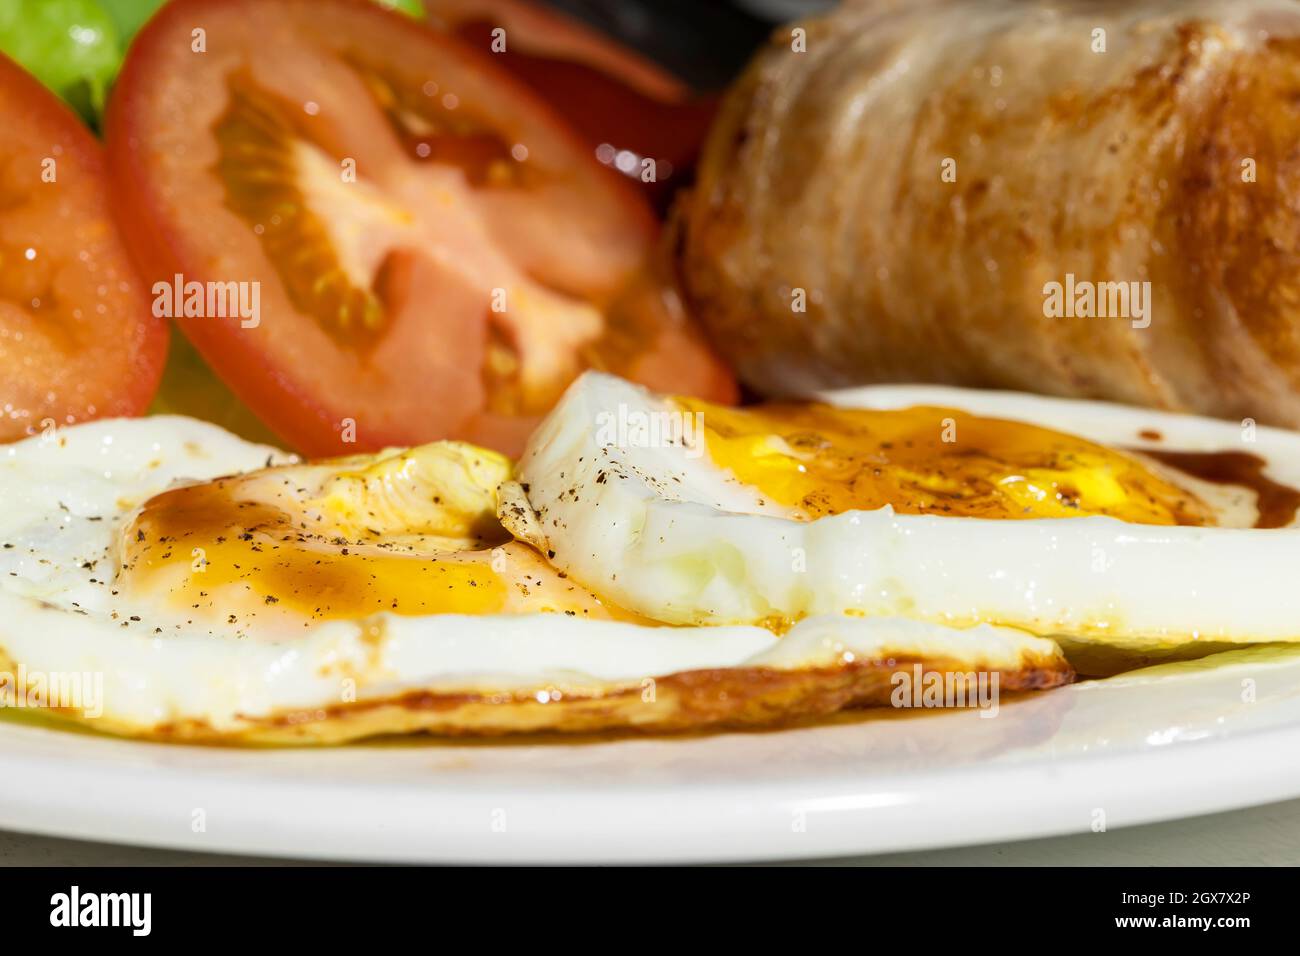 En primer lugar se colocaron huevos fritos, salchichas y tomate en un plato blanco para el desayuno. Foto de stock